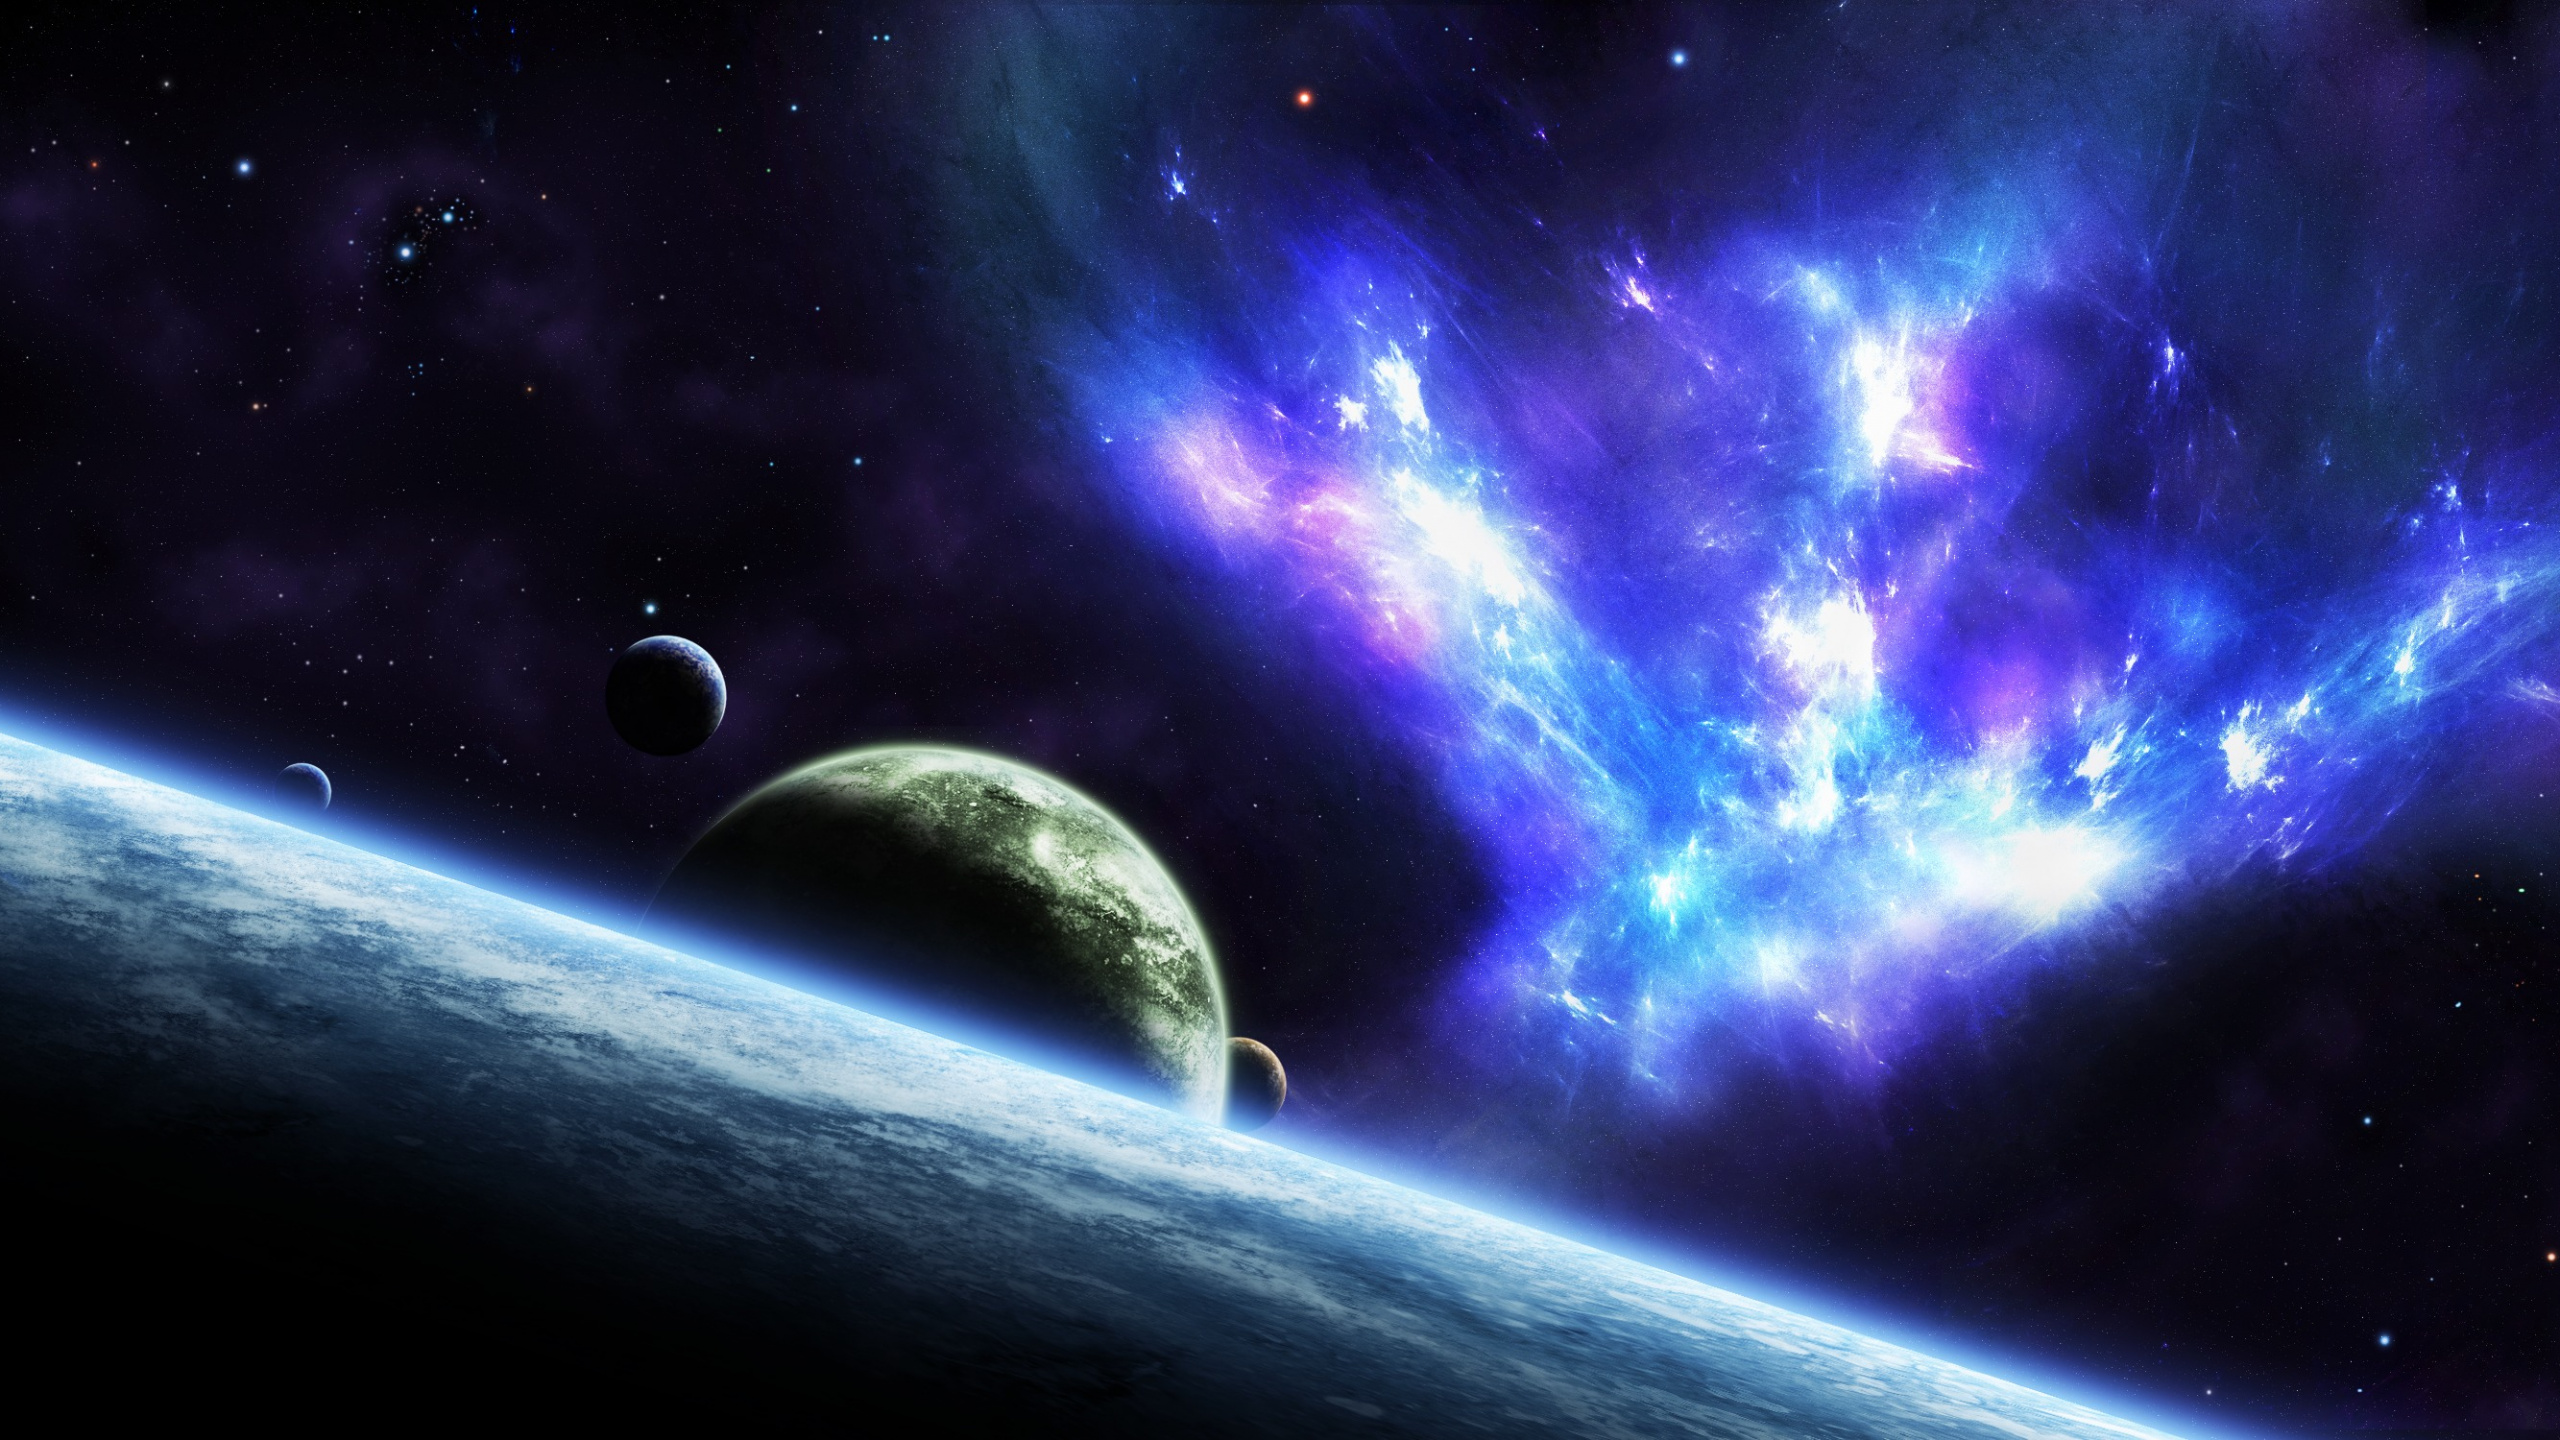 这个星球, 外层空间, 气氛, 天文学对象, 宇宙 壁纸 2560x1440 允许